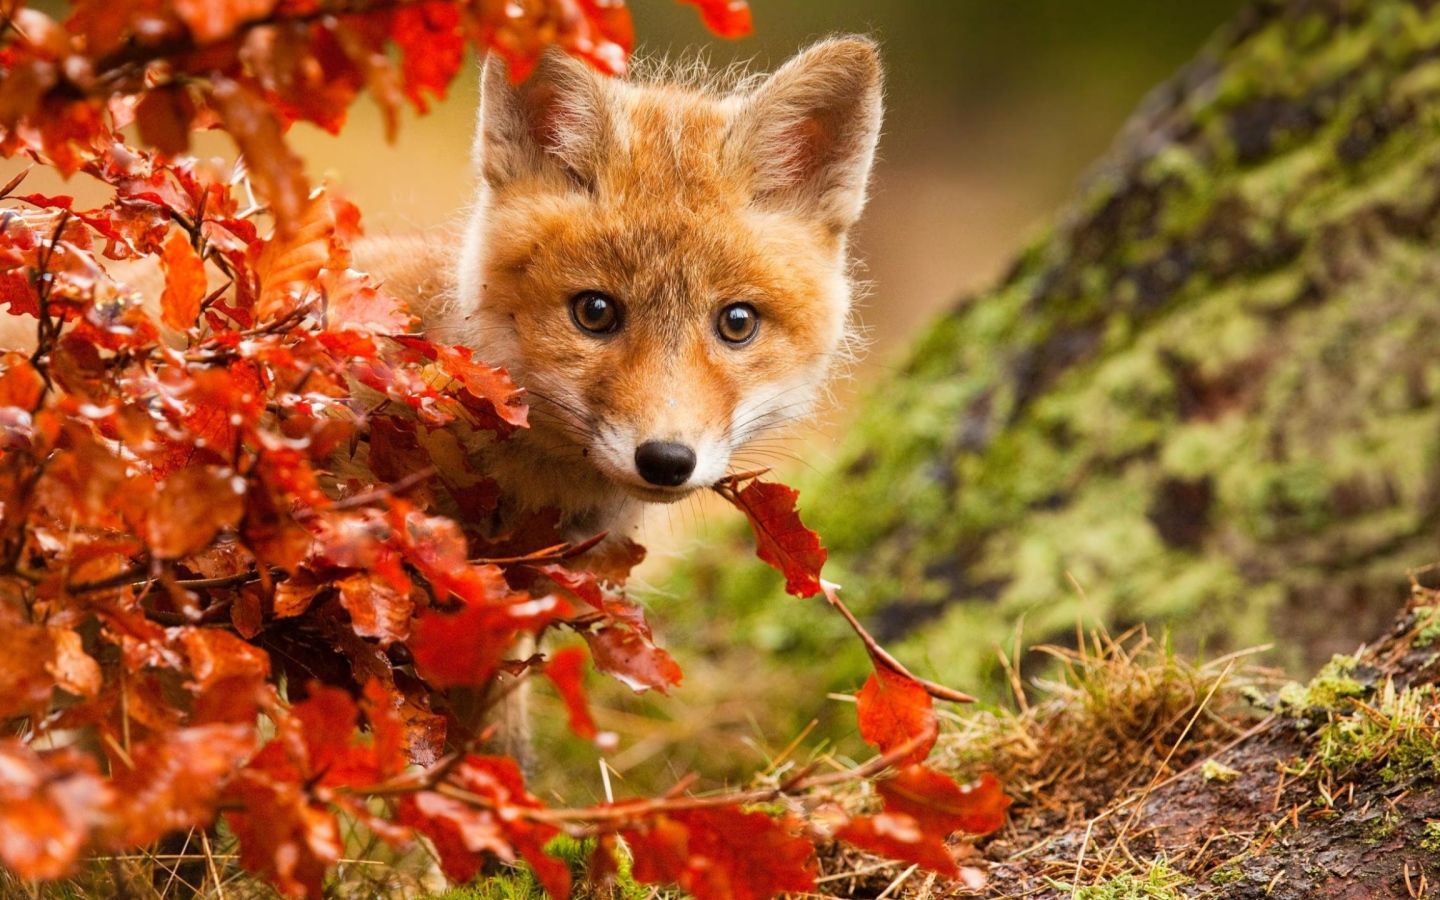 Little fox hiding in the orange leaves in autumn Desktop wallpaper 1440x900